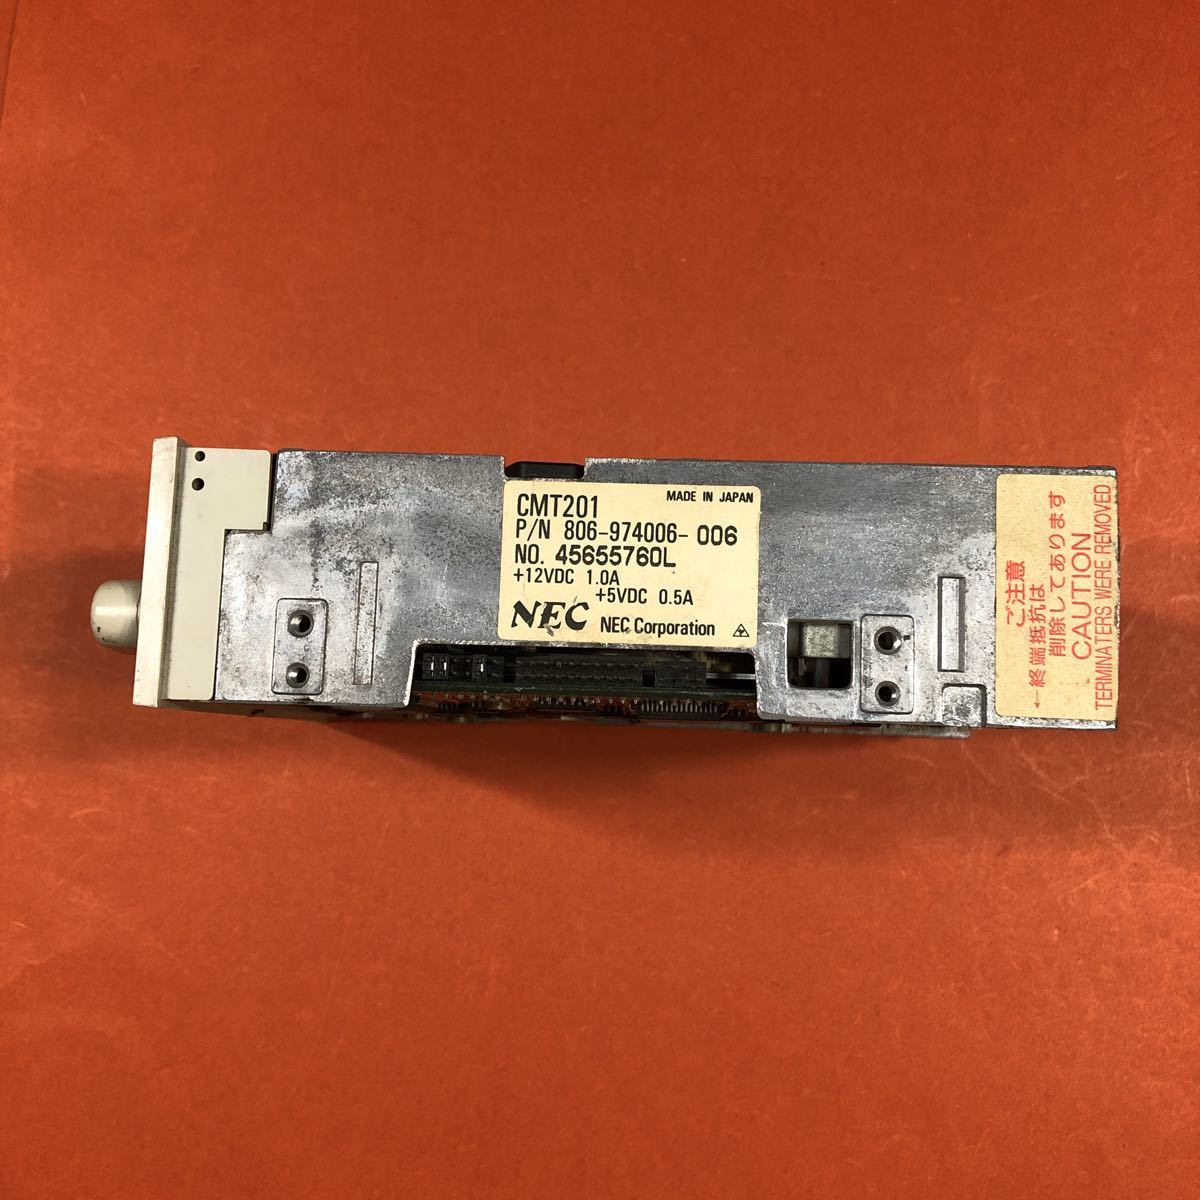 NEC CMT201 TEAC MT-2ST/N50 кассетная лента Drive? подробности неизвестен работоспособность не проверялась текущее состояние доставка б/у товар ..S-129 5760-3260